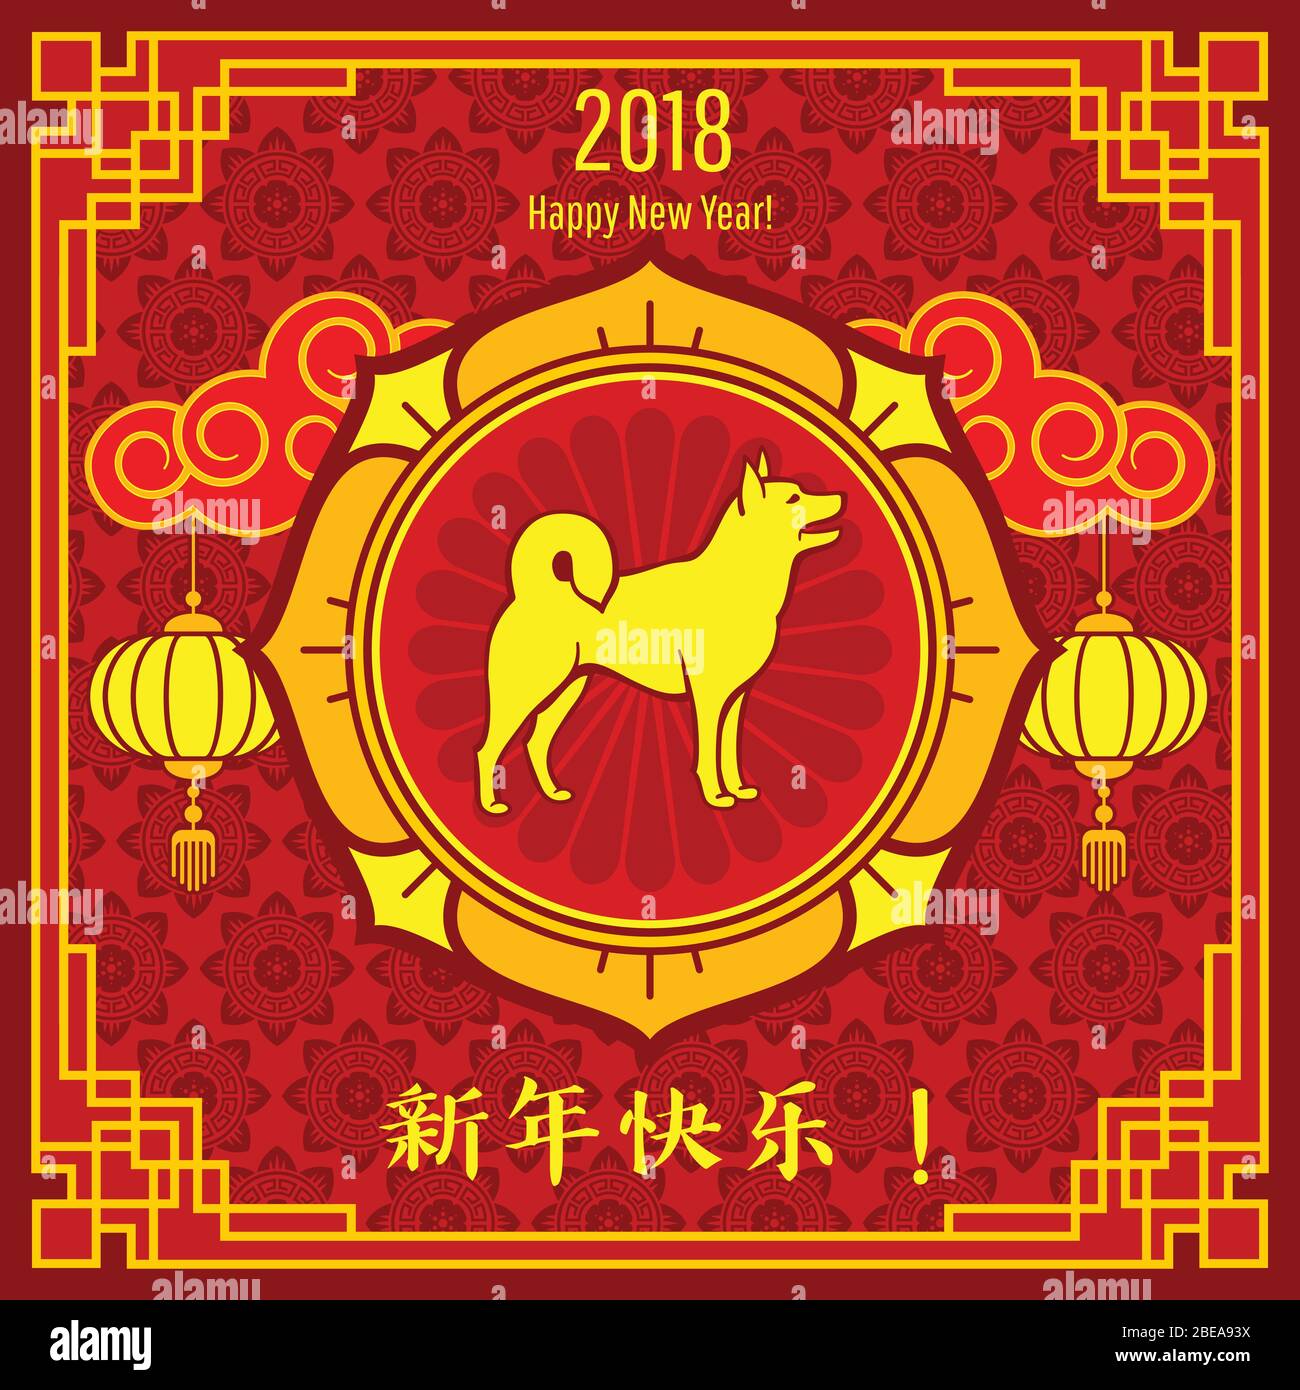 Fond vectoriel du nouvel an chinois pour carte de vœux avec motifs dorés asiatiques traditionnels. Illustration chinoise du chien de la nouvelle année Illustration de Vecteur